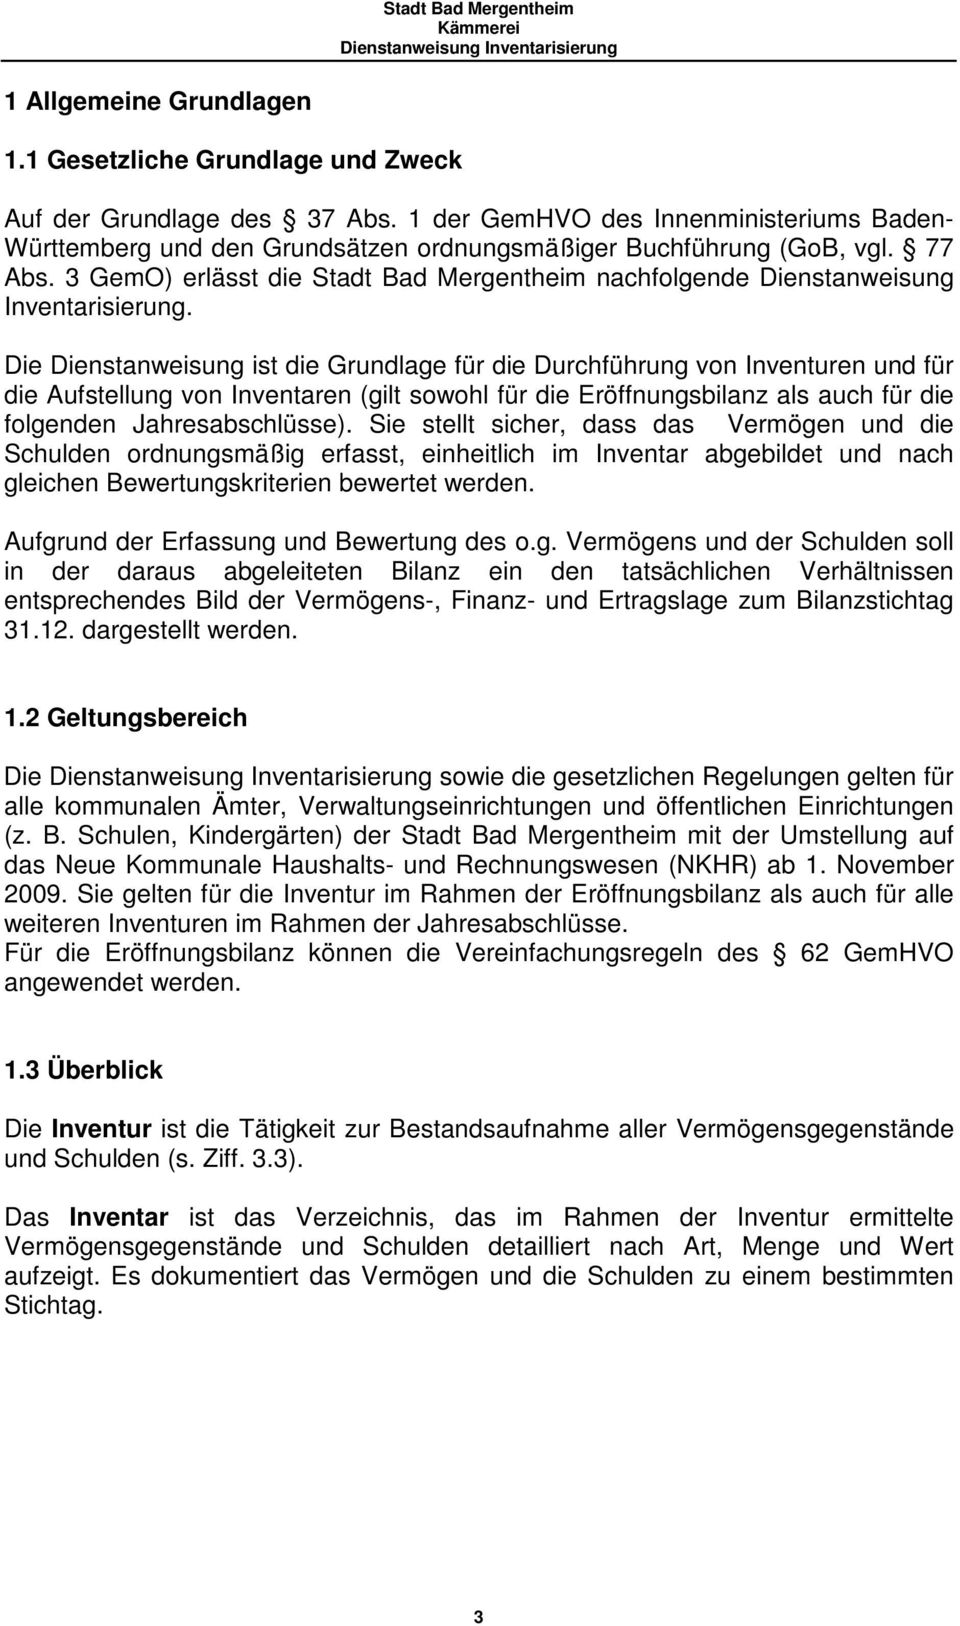 3 GemO) erlässt die Stadt Bad Mergentheim nachfolgende Dienstanweisung Inventarisierung.